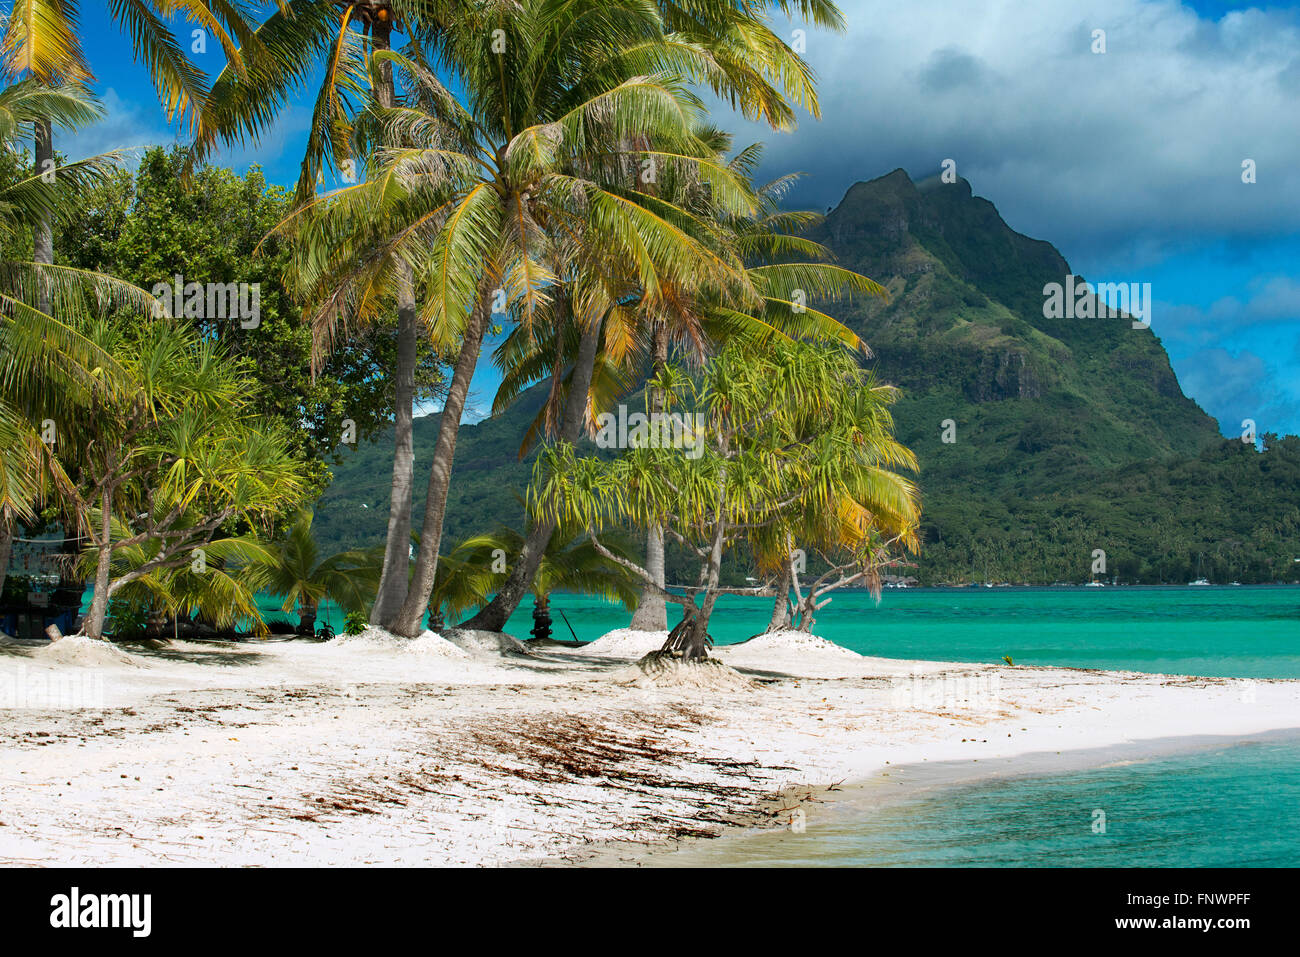 Strand von Motu Tapu, einer kleinen Insel in der Lagune von Bora Bora, Gesellschaftsinseln, Französisch-Polynesien, Südsee. Stockfoto